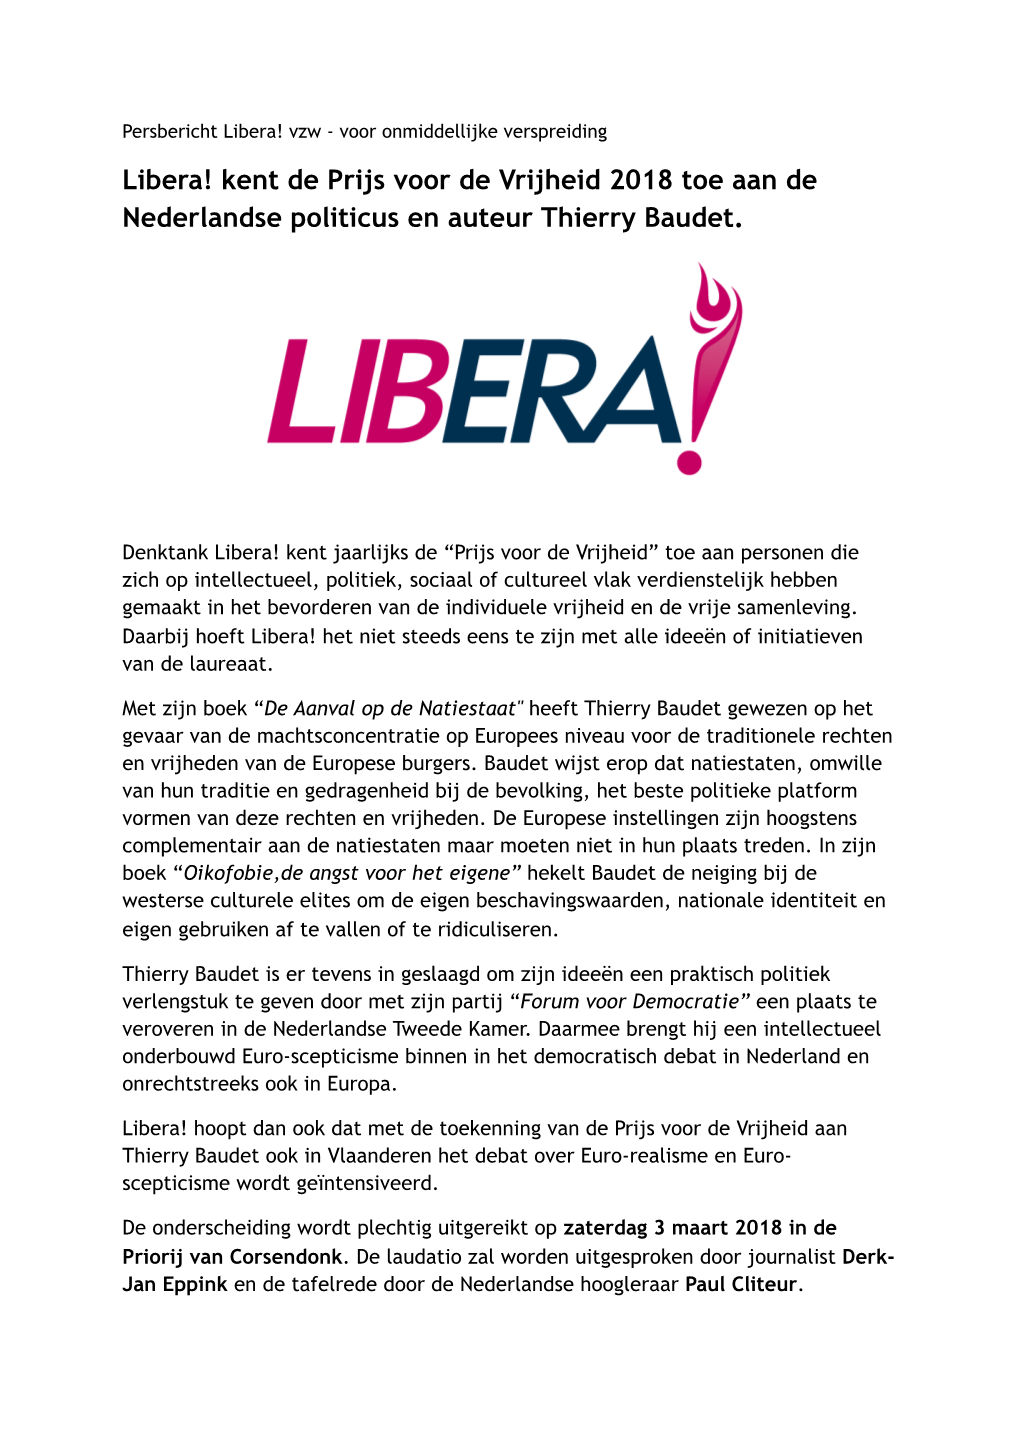 Persbericht Libera! Vzw - Voor Onmiddellijke Verspreiding Libera! Kent De Prijs Voor De Vrijheid 2018 Toe Aan De Nederlandse Politicus En Auteur Thierry Baudet